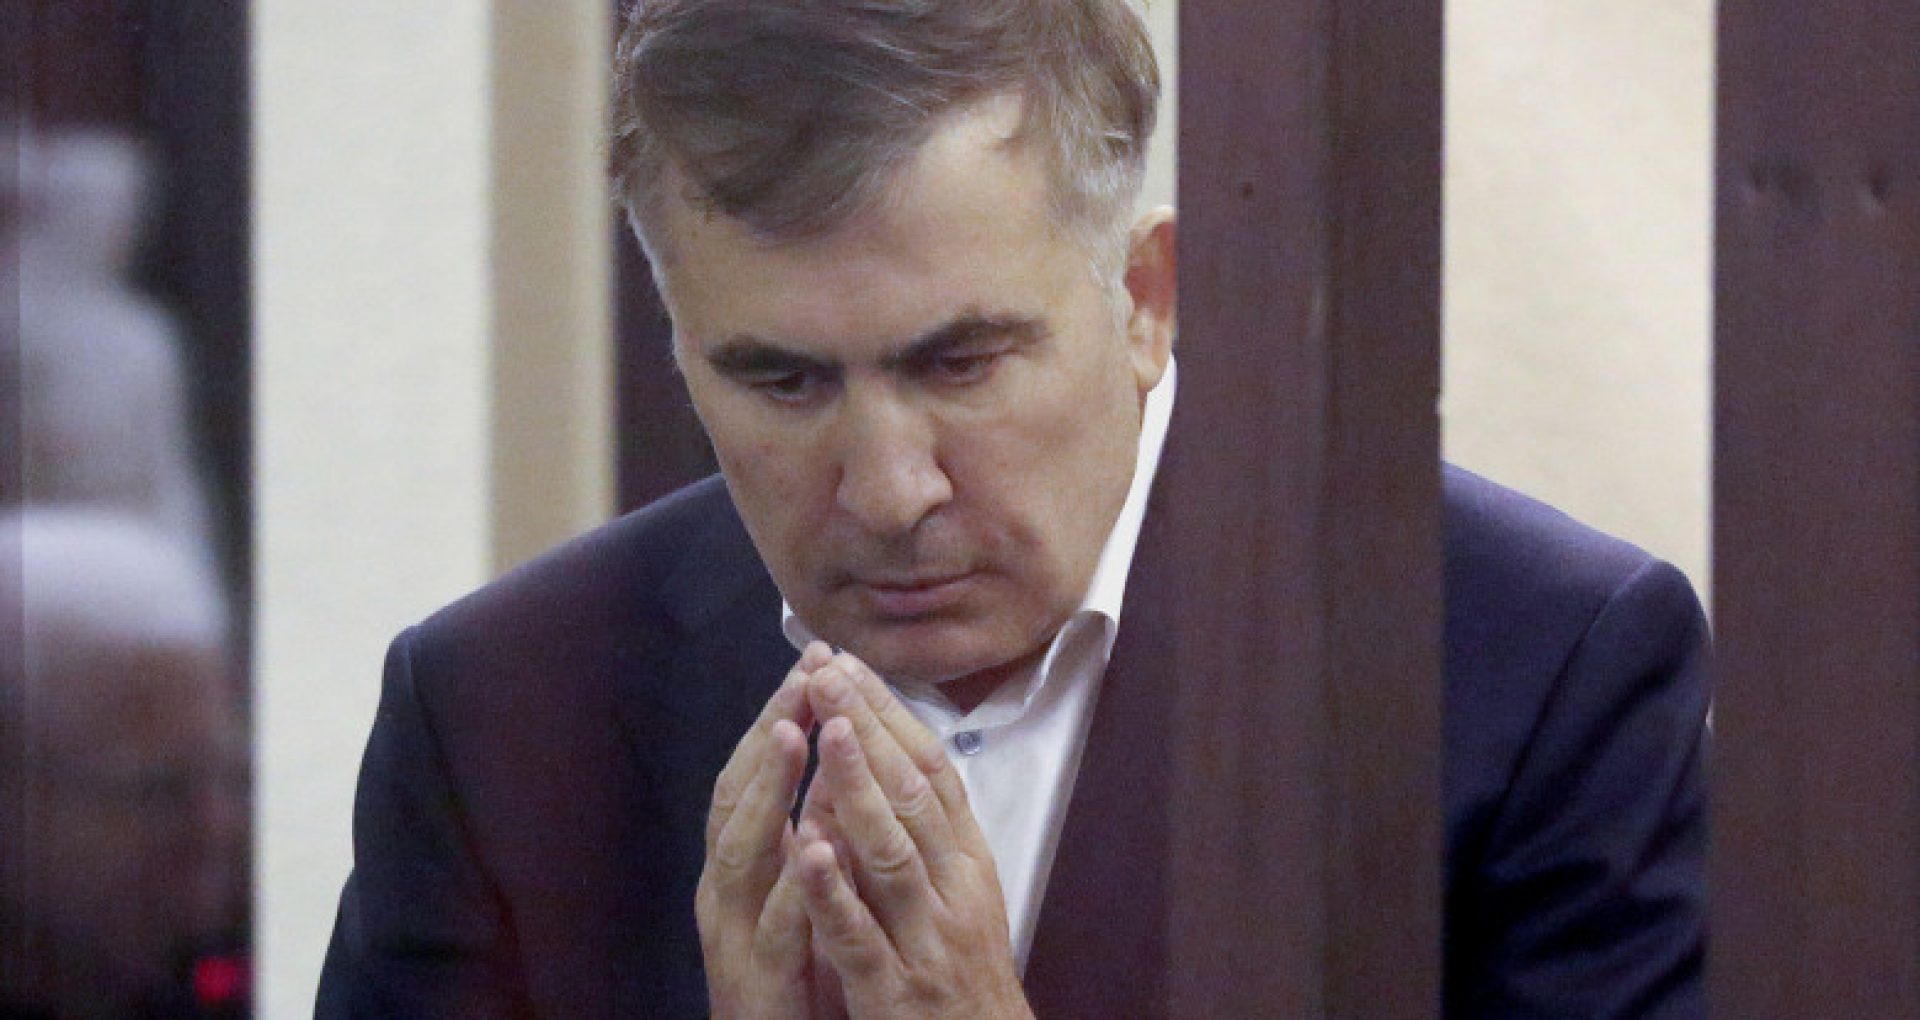 Fostul preşedinte al Georgiei, Mihail Saakaşvili, aflat în închisoare, suferă de tulburări neurologice severe din cauza torturii